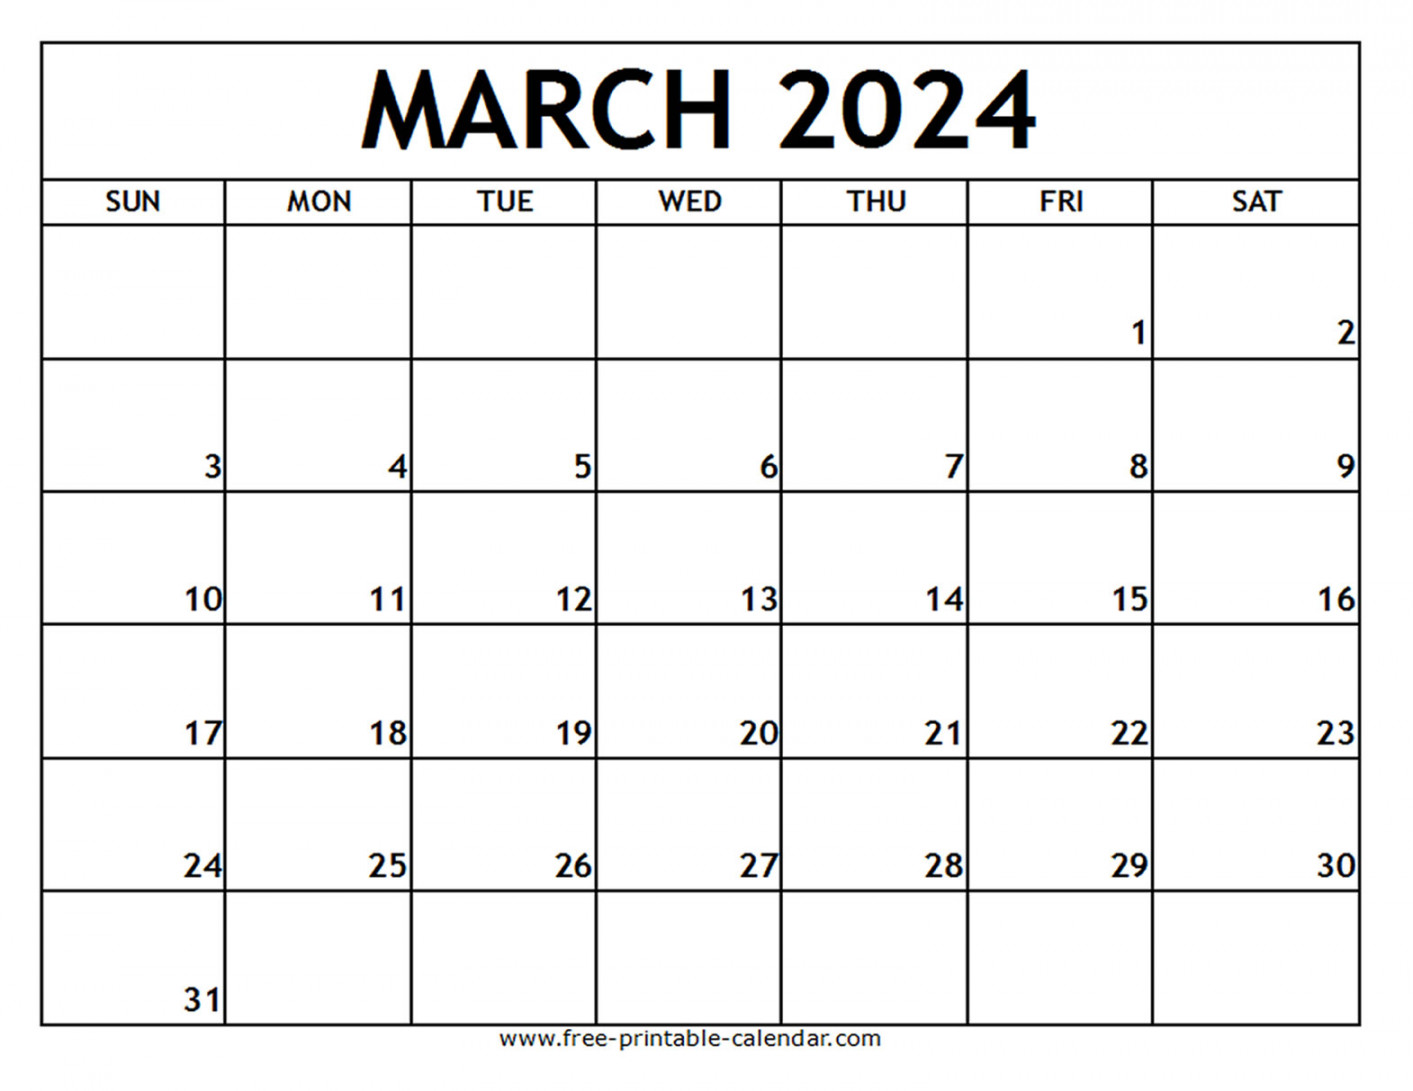 march printable calendar free printable calendar com 2